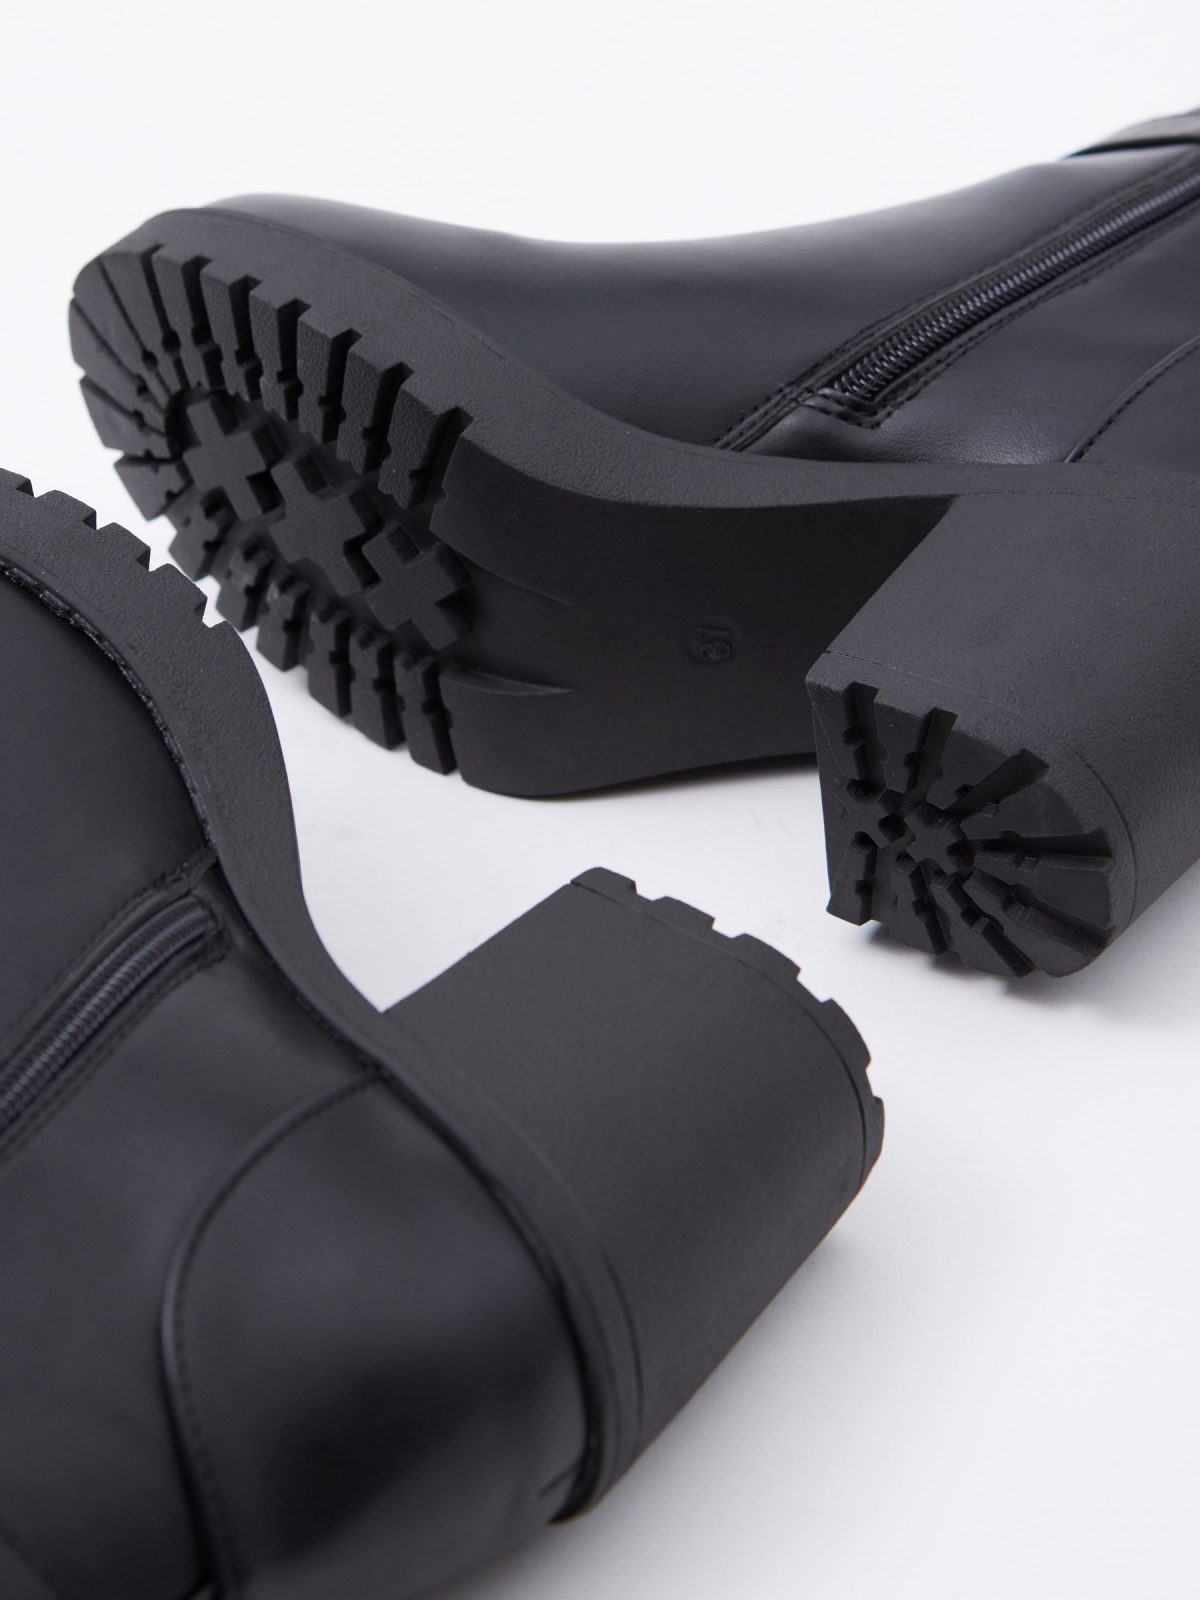 Botins preto efeito couro com fivela preto vista detalhe